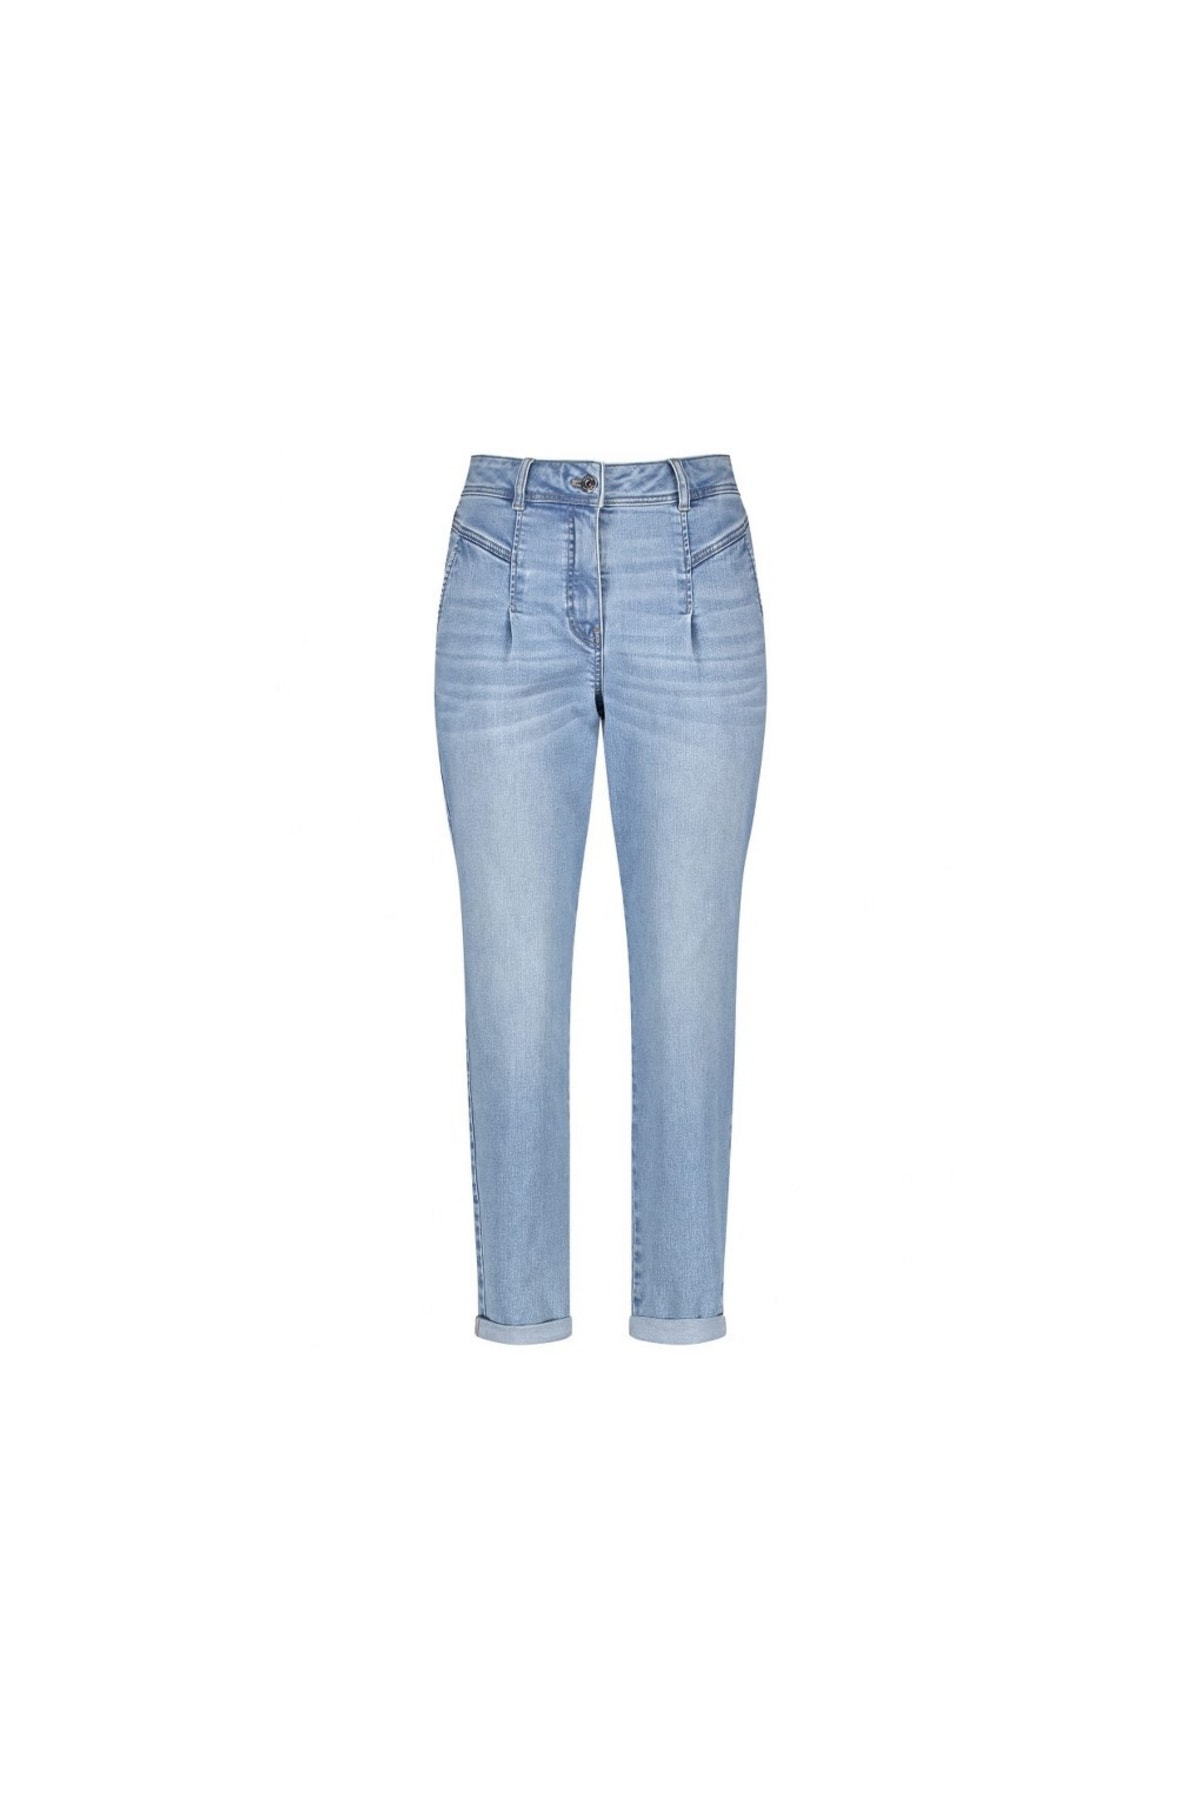 TAIFUN Jeans Blau Straight Fast ausverkauft